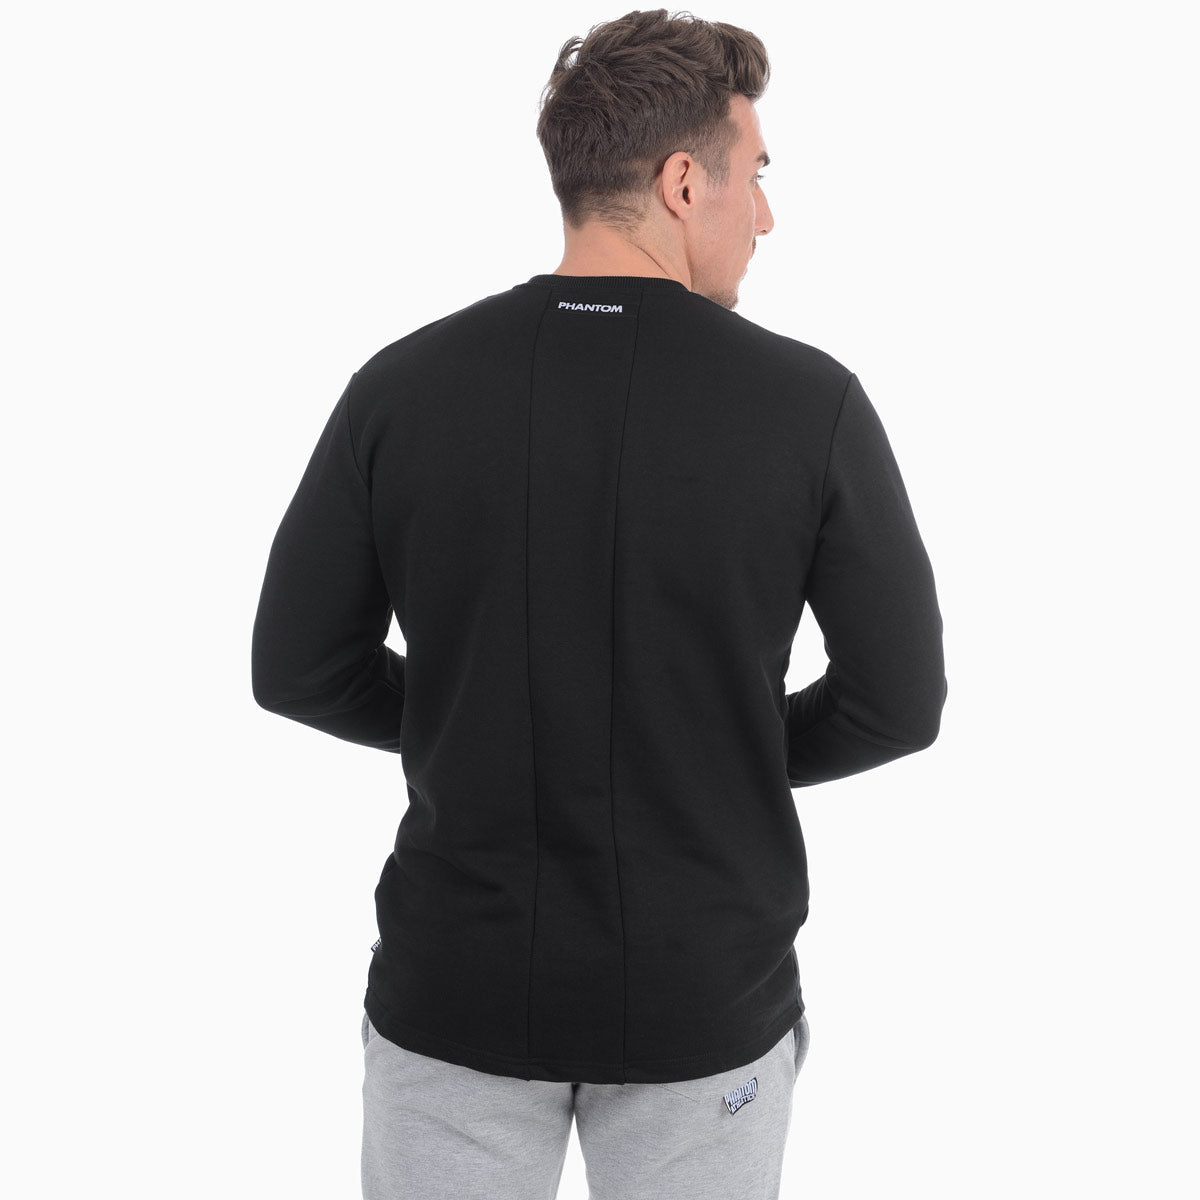 Sweater Vantage - Schwarz